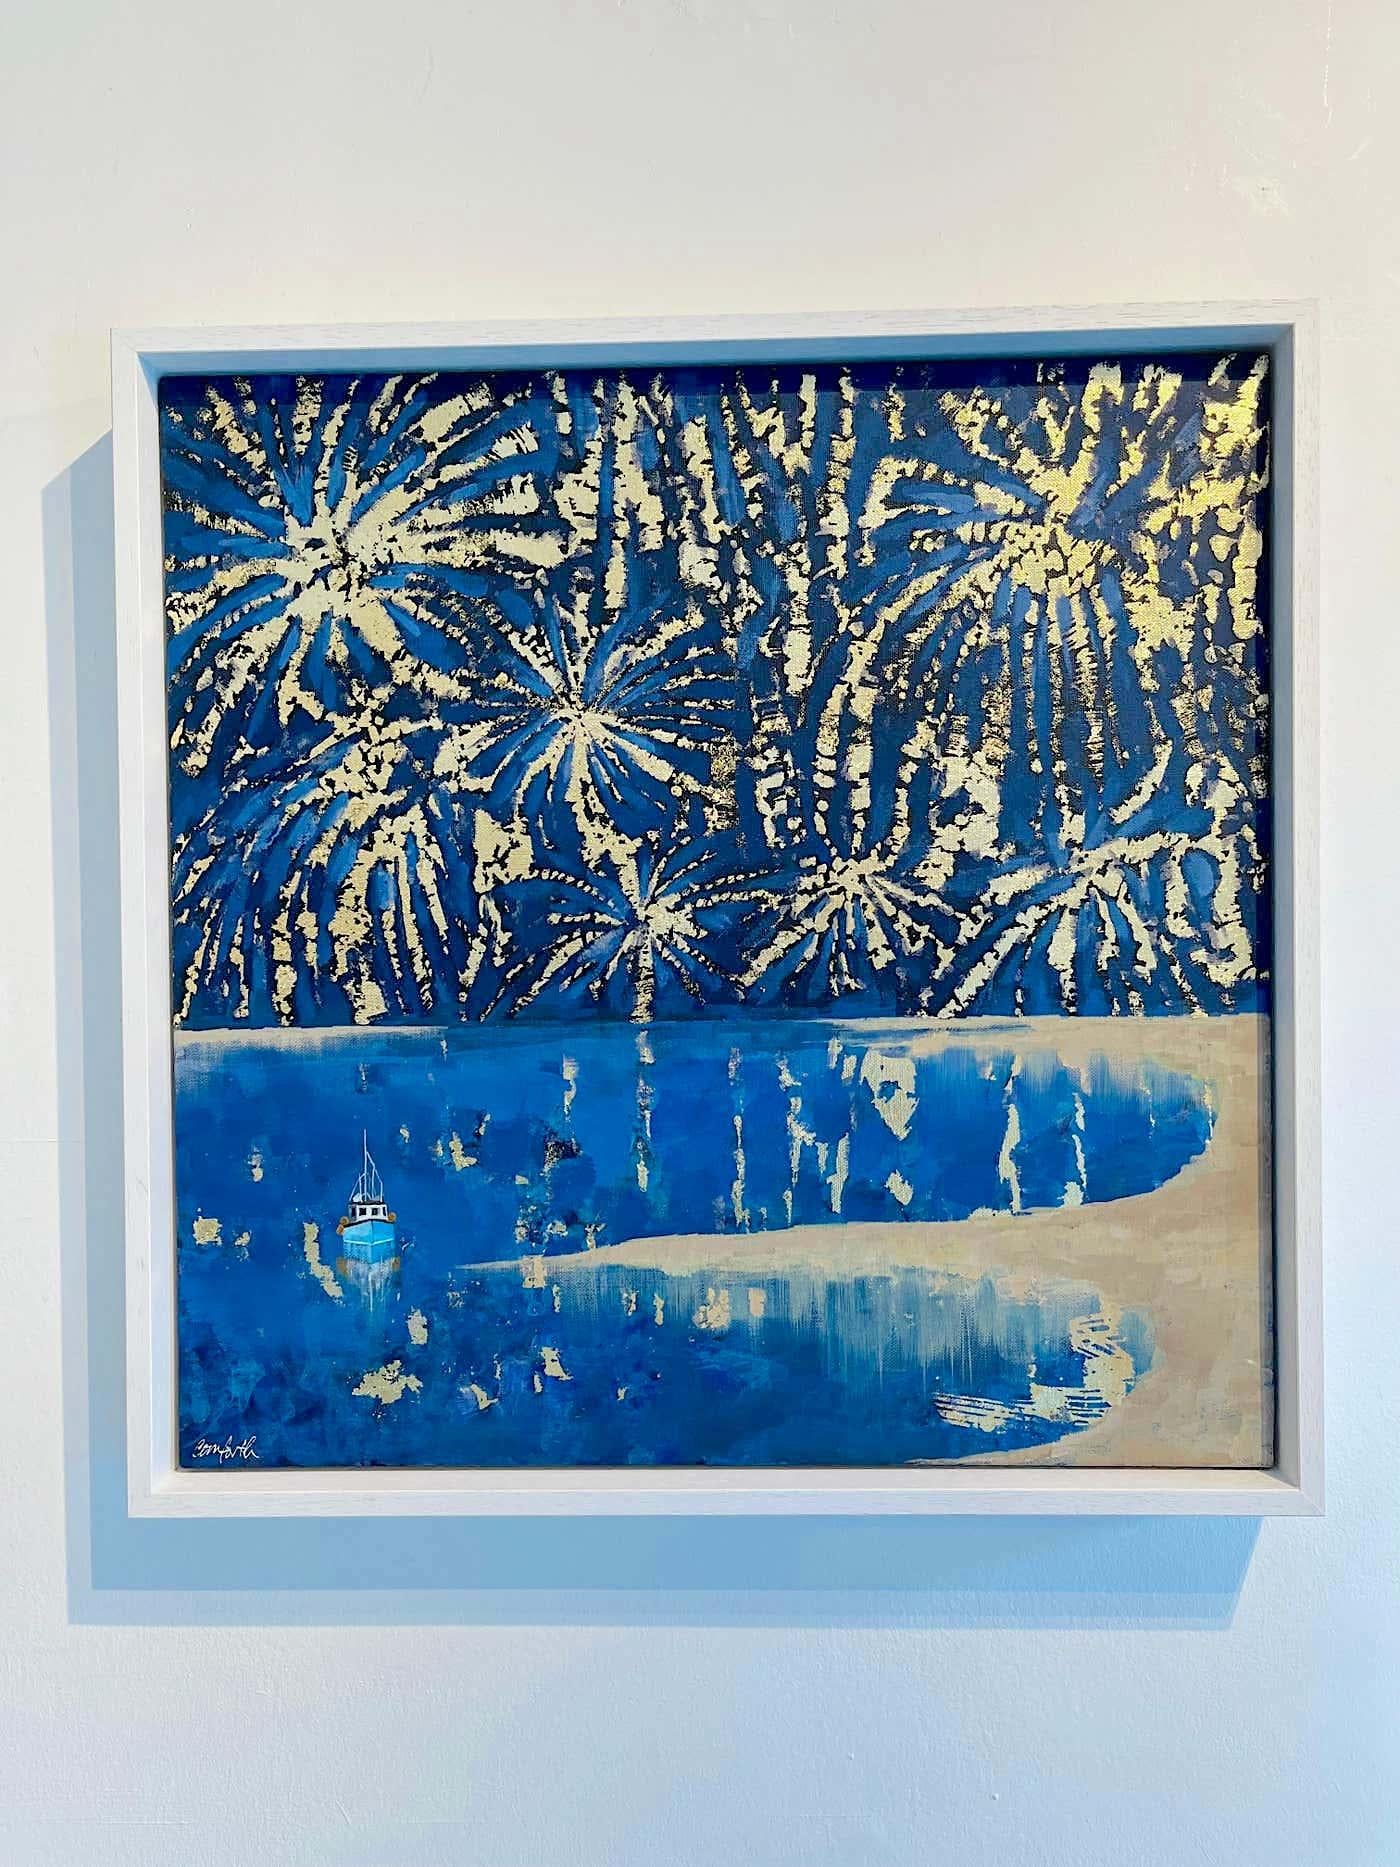 Winter-Feuerwerk-ORIGINAL IMPRESSIONISMUS Seelandschaft Ölgemälde-Zeitgenössische Kunst – Painting von Lenny Cornforth